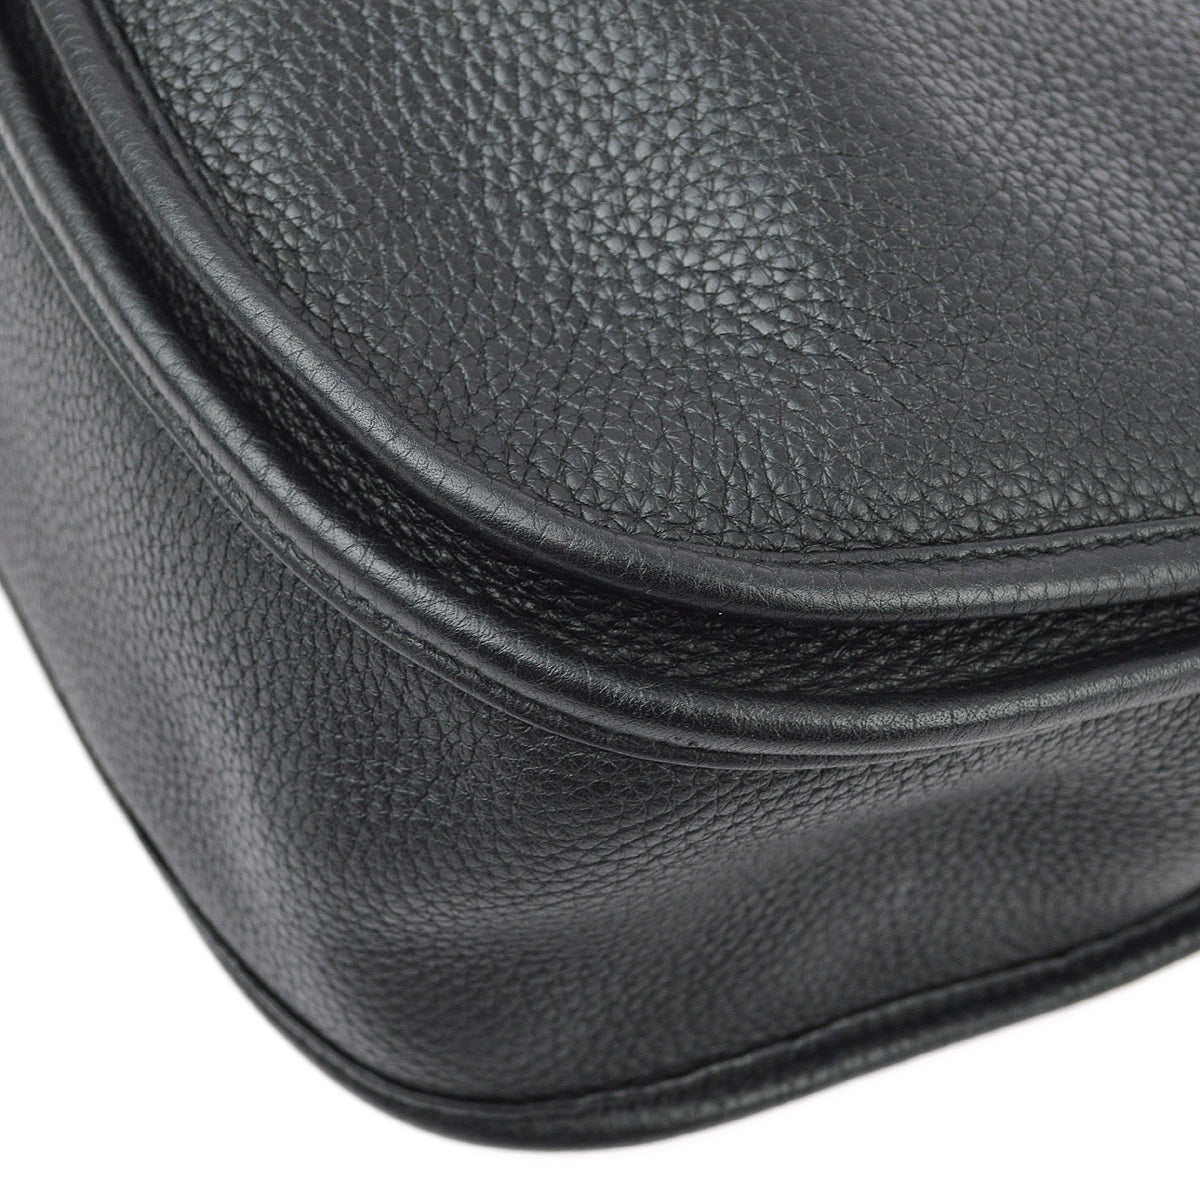 Hermes Black Taurillon Clemence Evelyne 3 GM Shoulder Bag